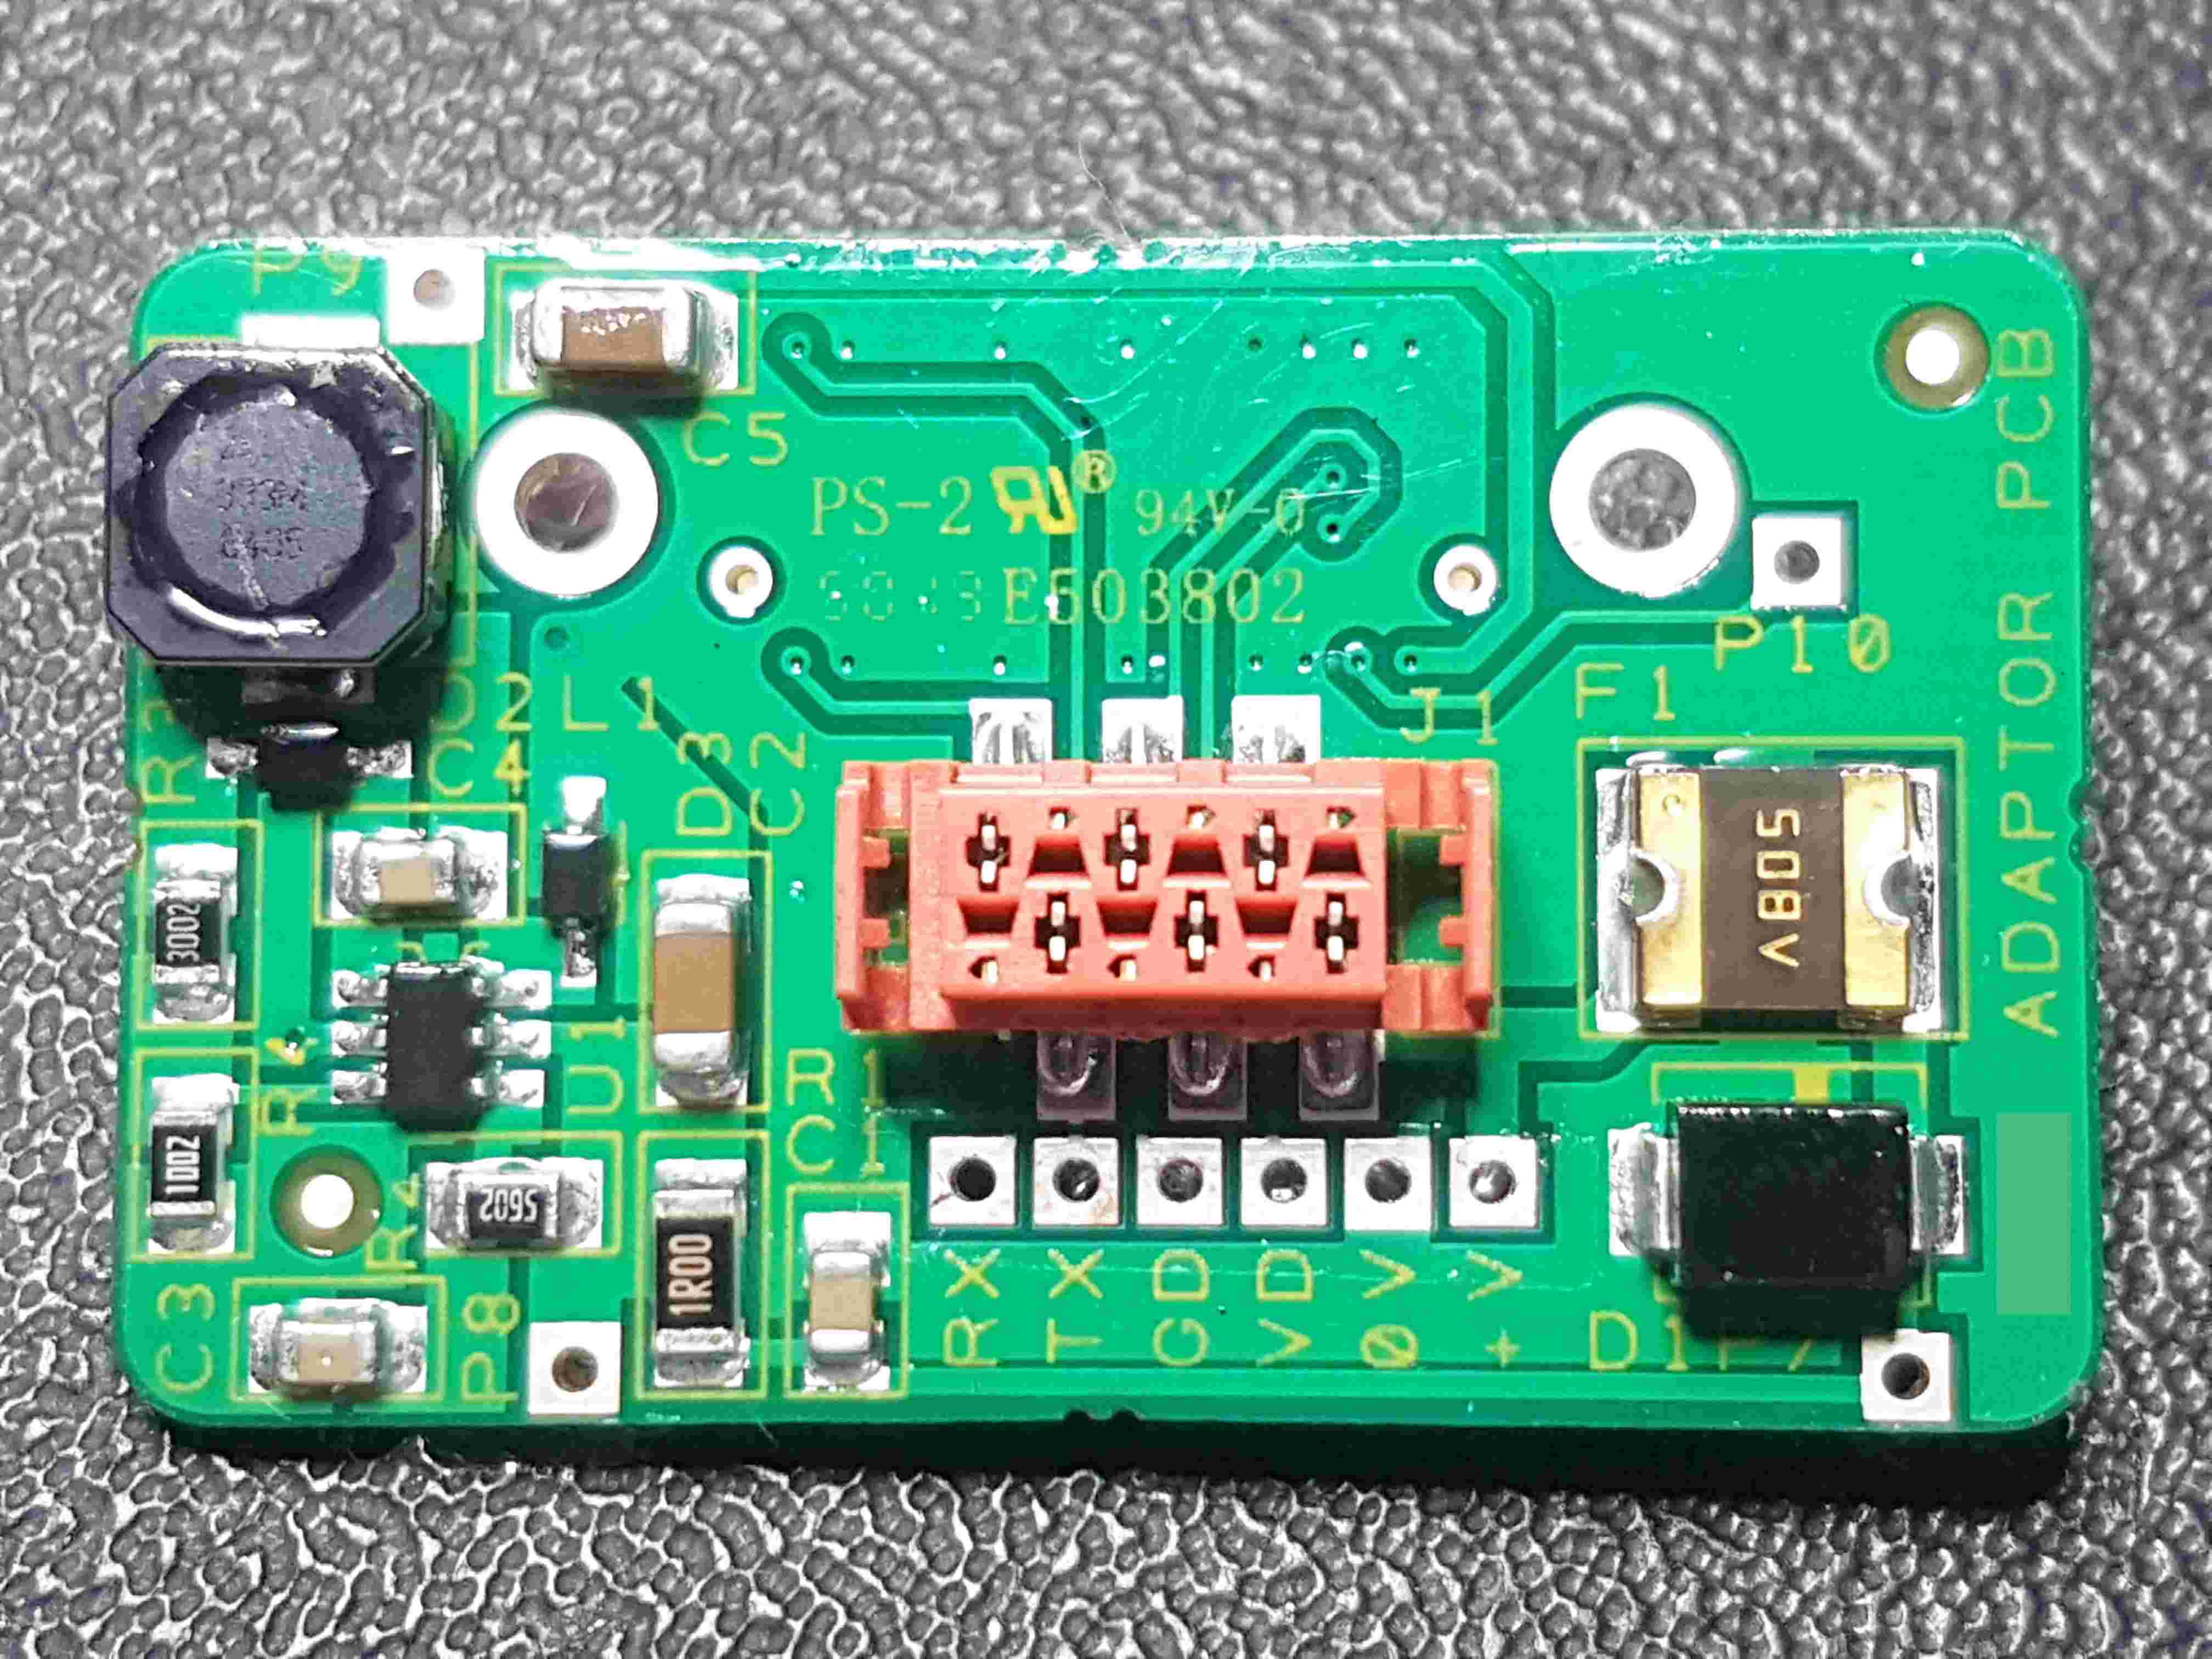 IR Camera Adaptor Printed Circuit Board